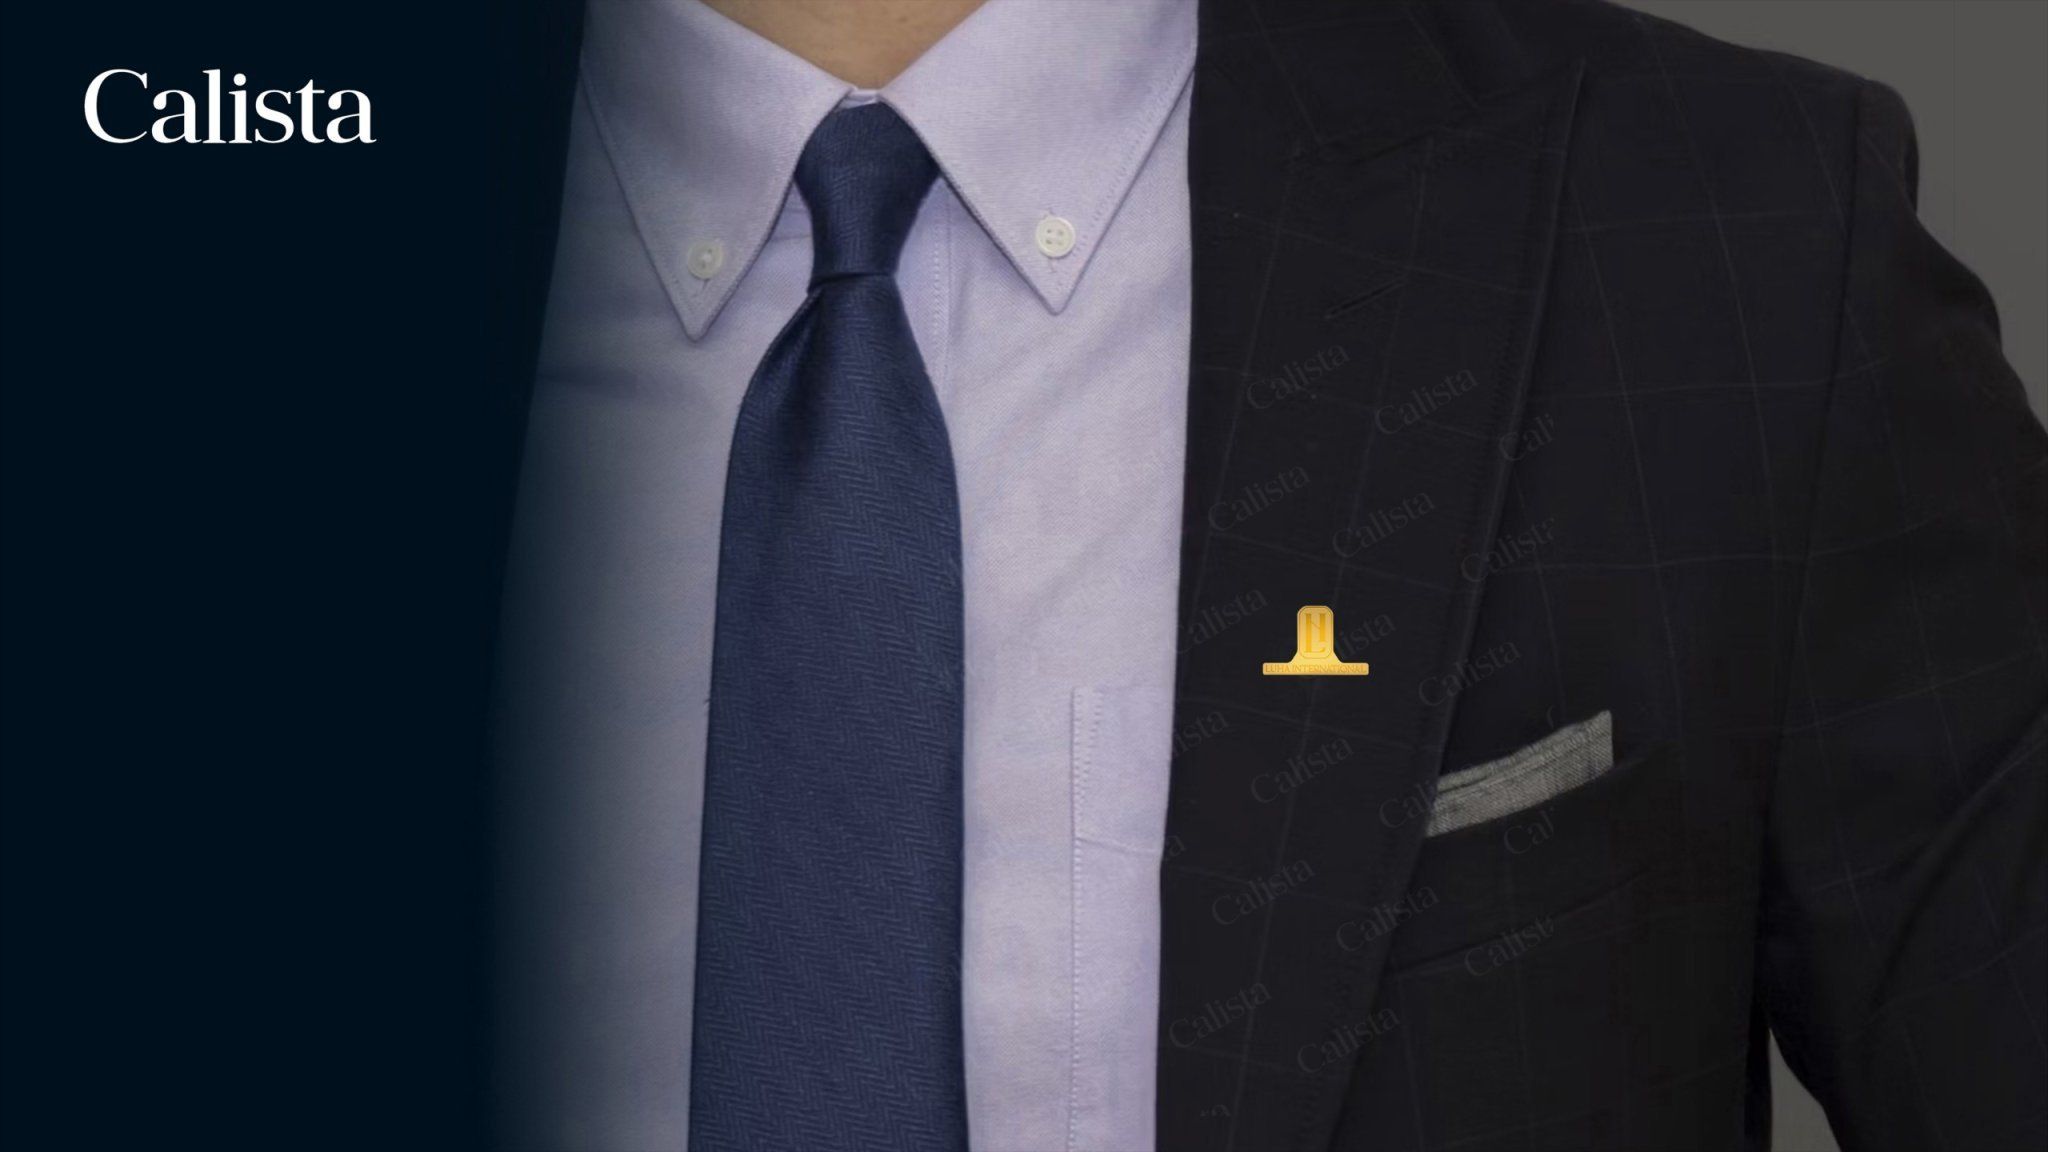  Pin/Huy hiệu cài áo mạ vàng logo doanh nghiệp Luha International 